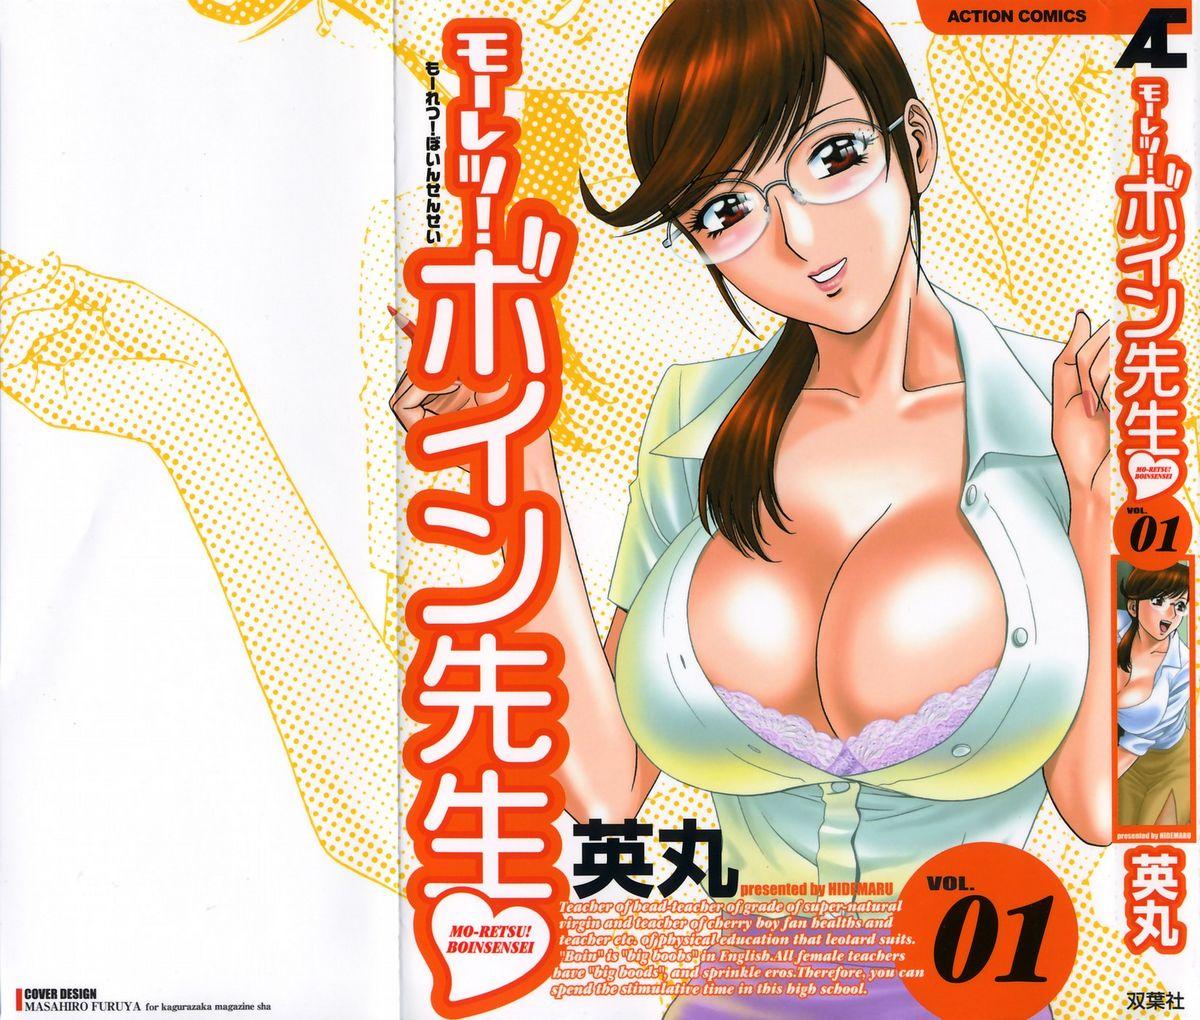 [Hidemaru] Mo-Retsu! Boin Sensei (Boing Boing Teacher) Vol.1 0